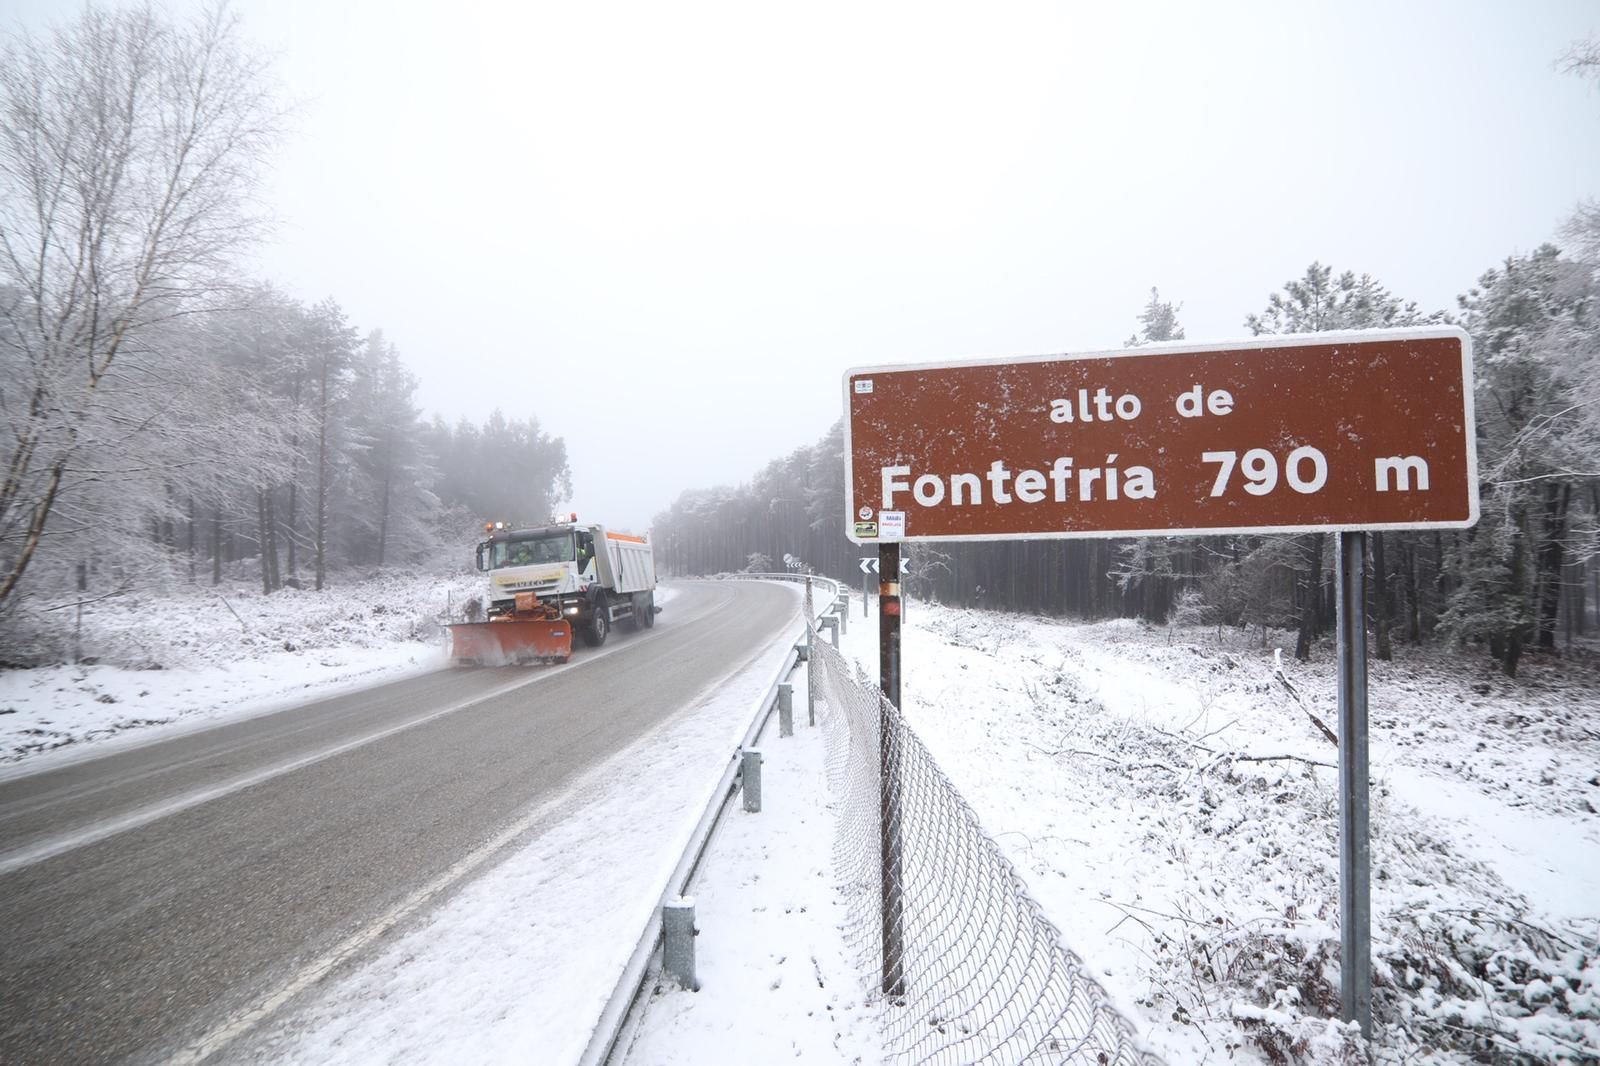 La borrasca Dora en Galicia: las fotos de un temporal de nieve y frío